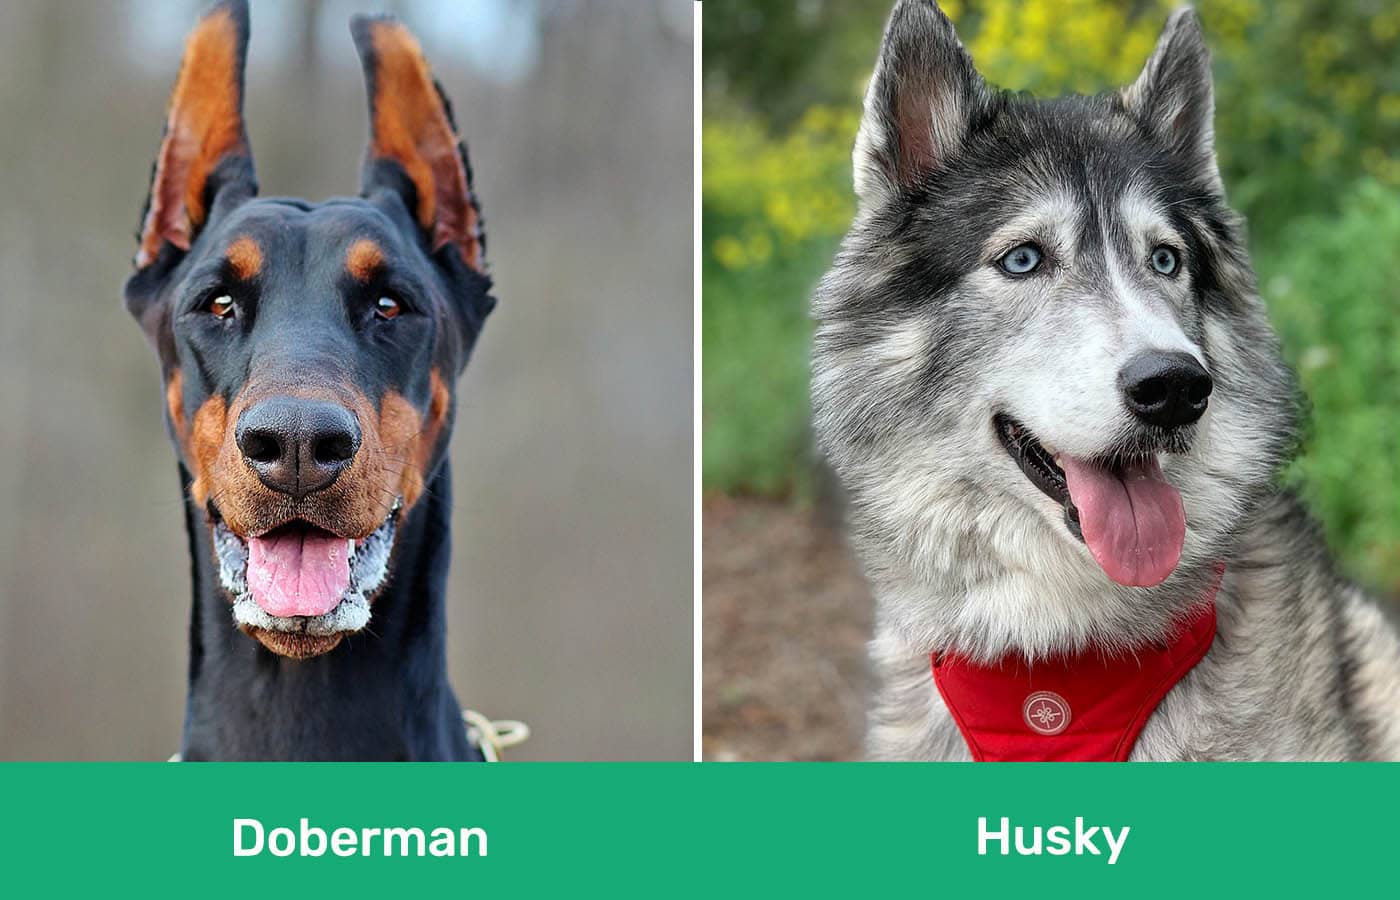 Doberman vs Husky side by side